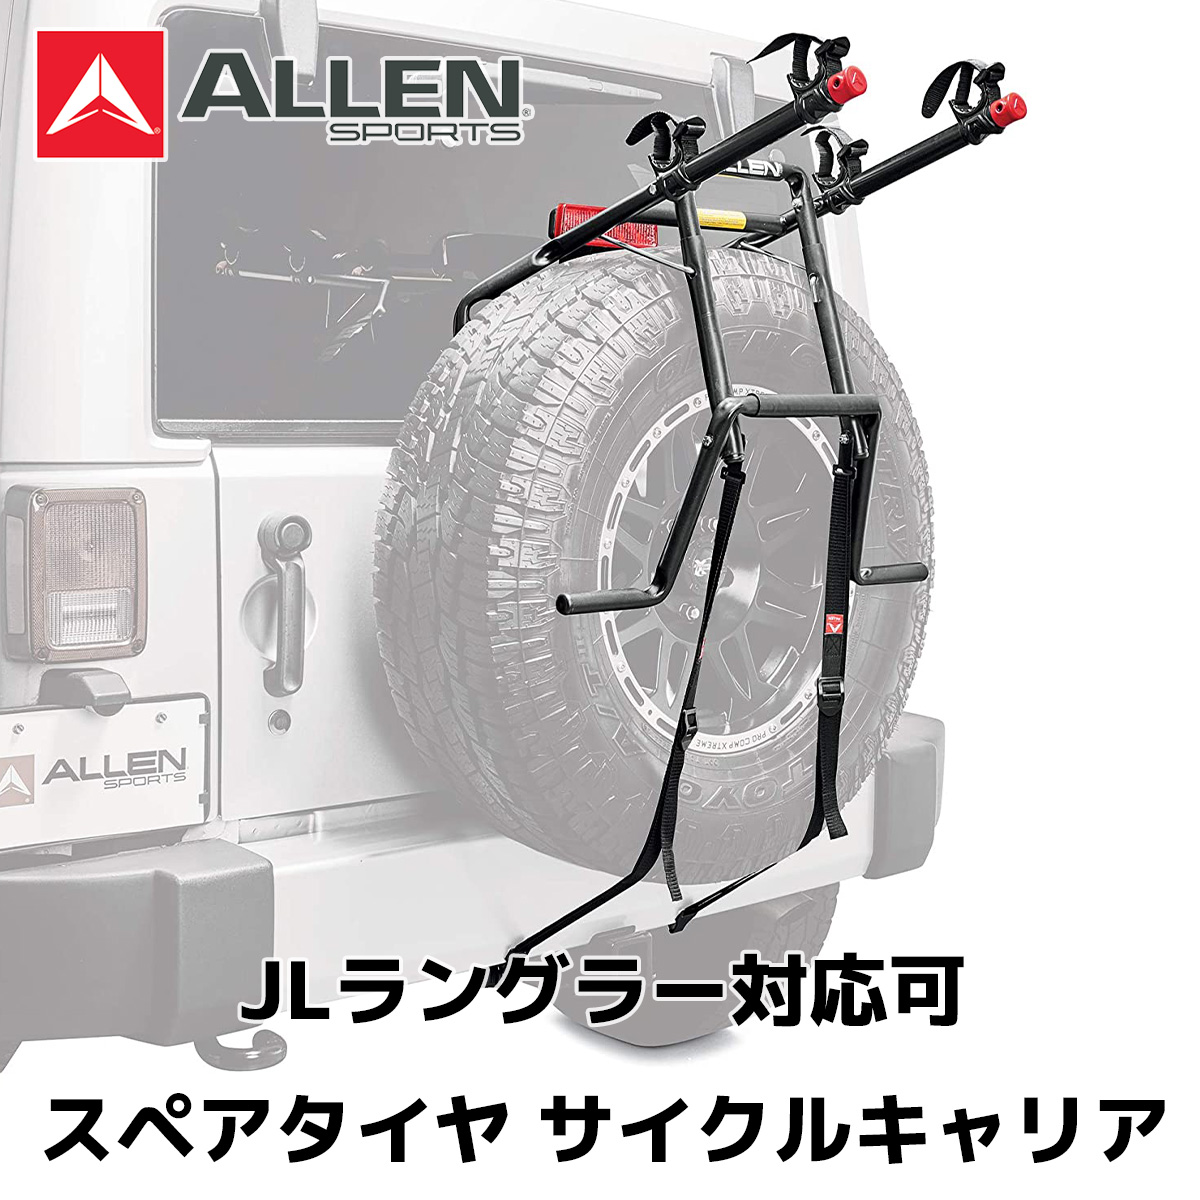 AllenSports アレンスポーツ スペアタイヤ サイクルキャリア 日本全国 送料無料 DN-322 ジープ ジムニー 日本製 ラングラー